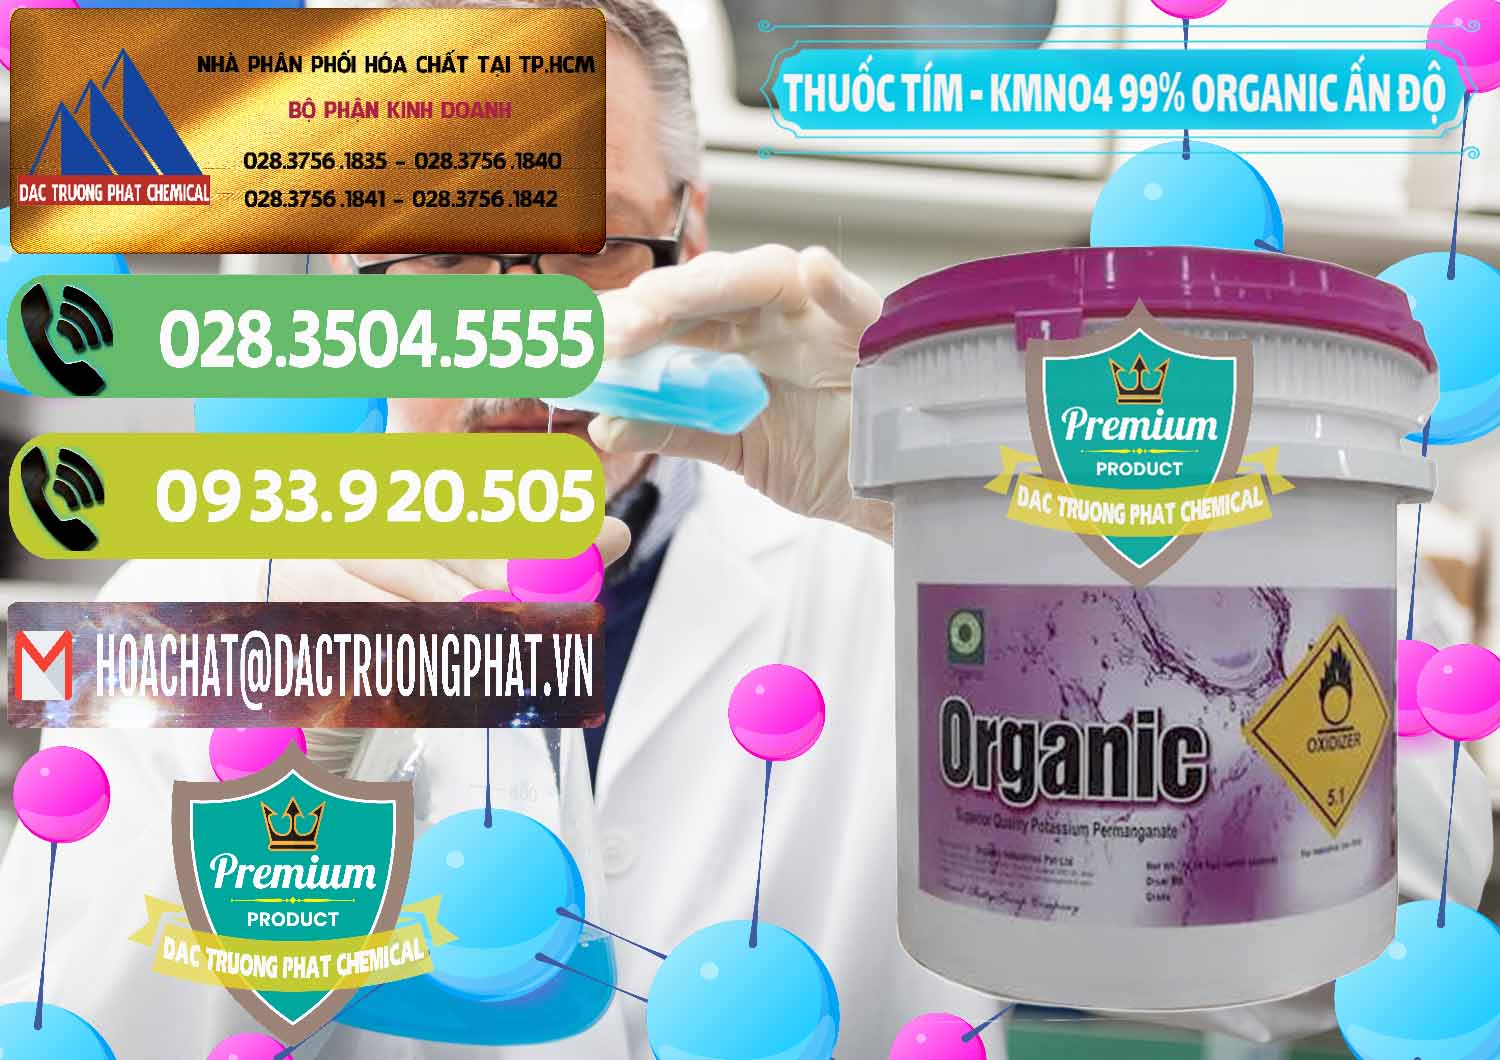 Đơn vị chuyên kinh doanh và bán Thuốc Tím - KMNO4 99% Organic Ấn Độ India - 0216 - Chuyên bán ( phân phối ) hóa chất tại TP.HCM - hoachatmientay.vn